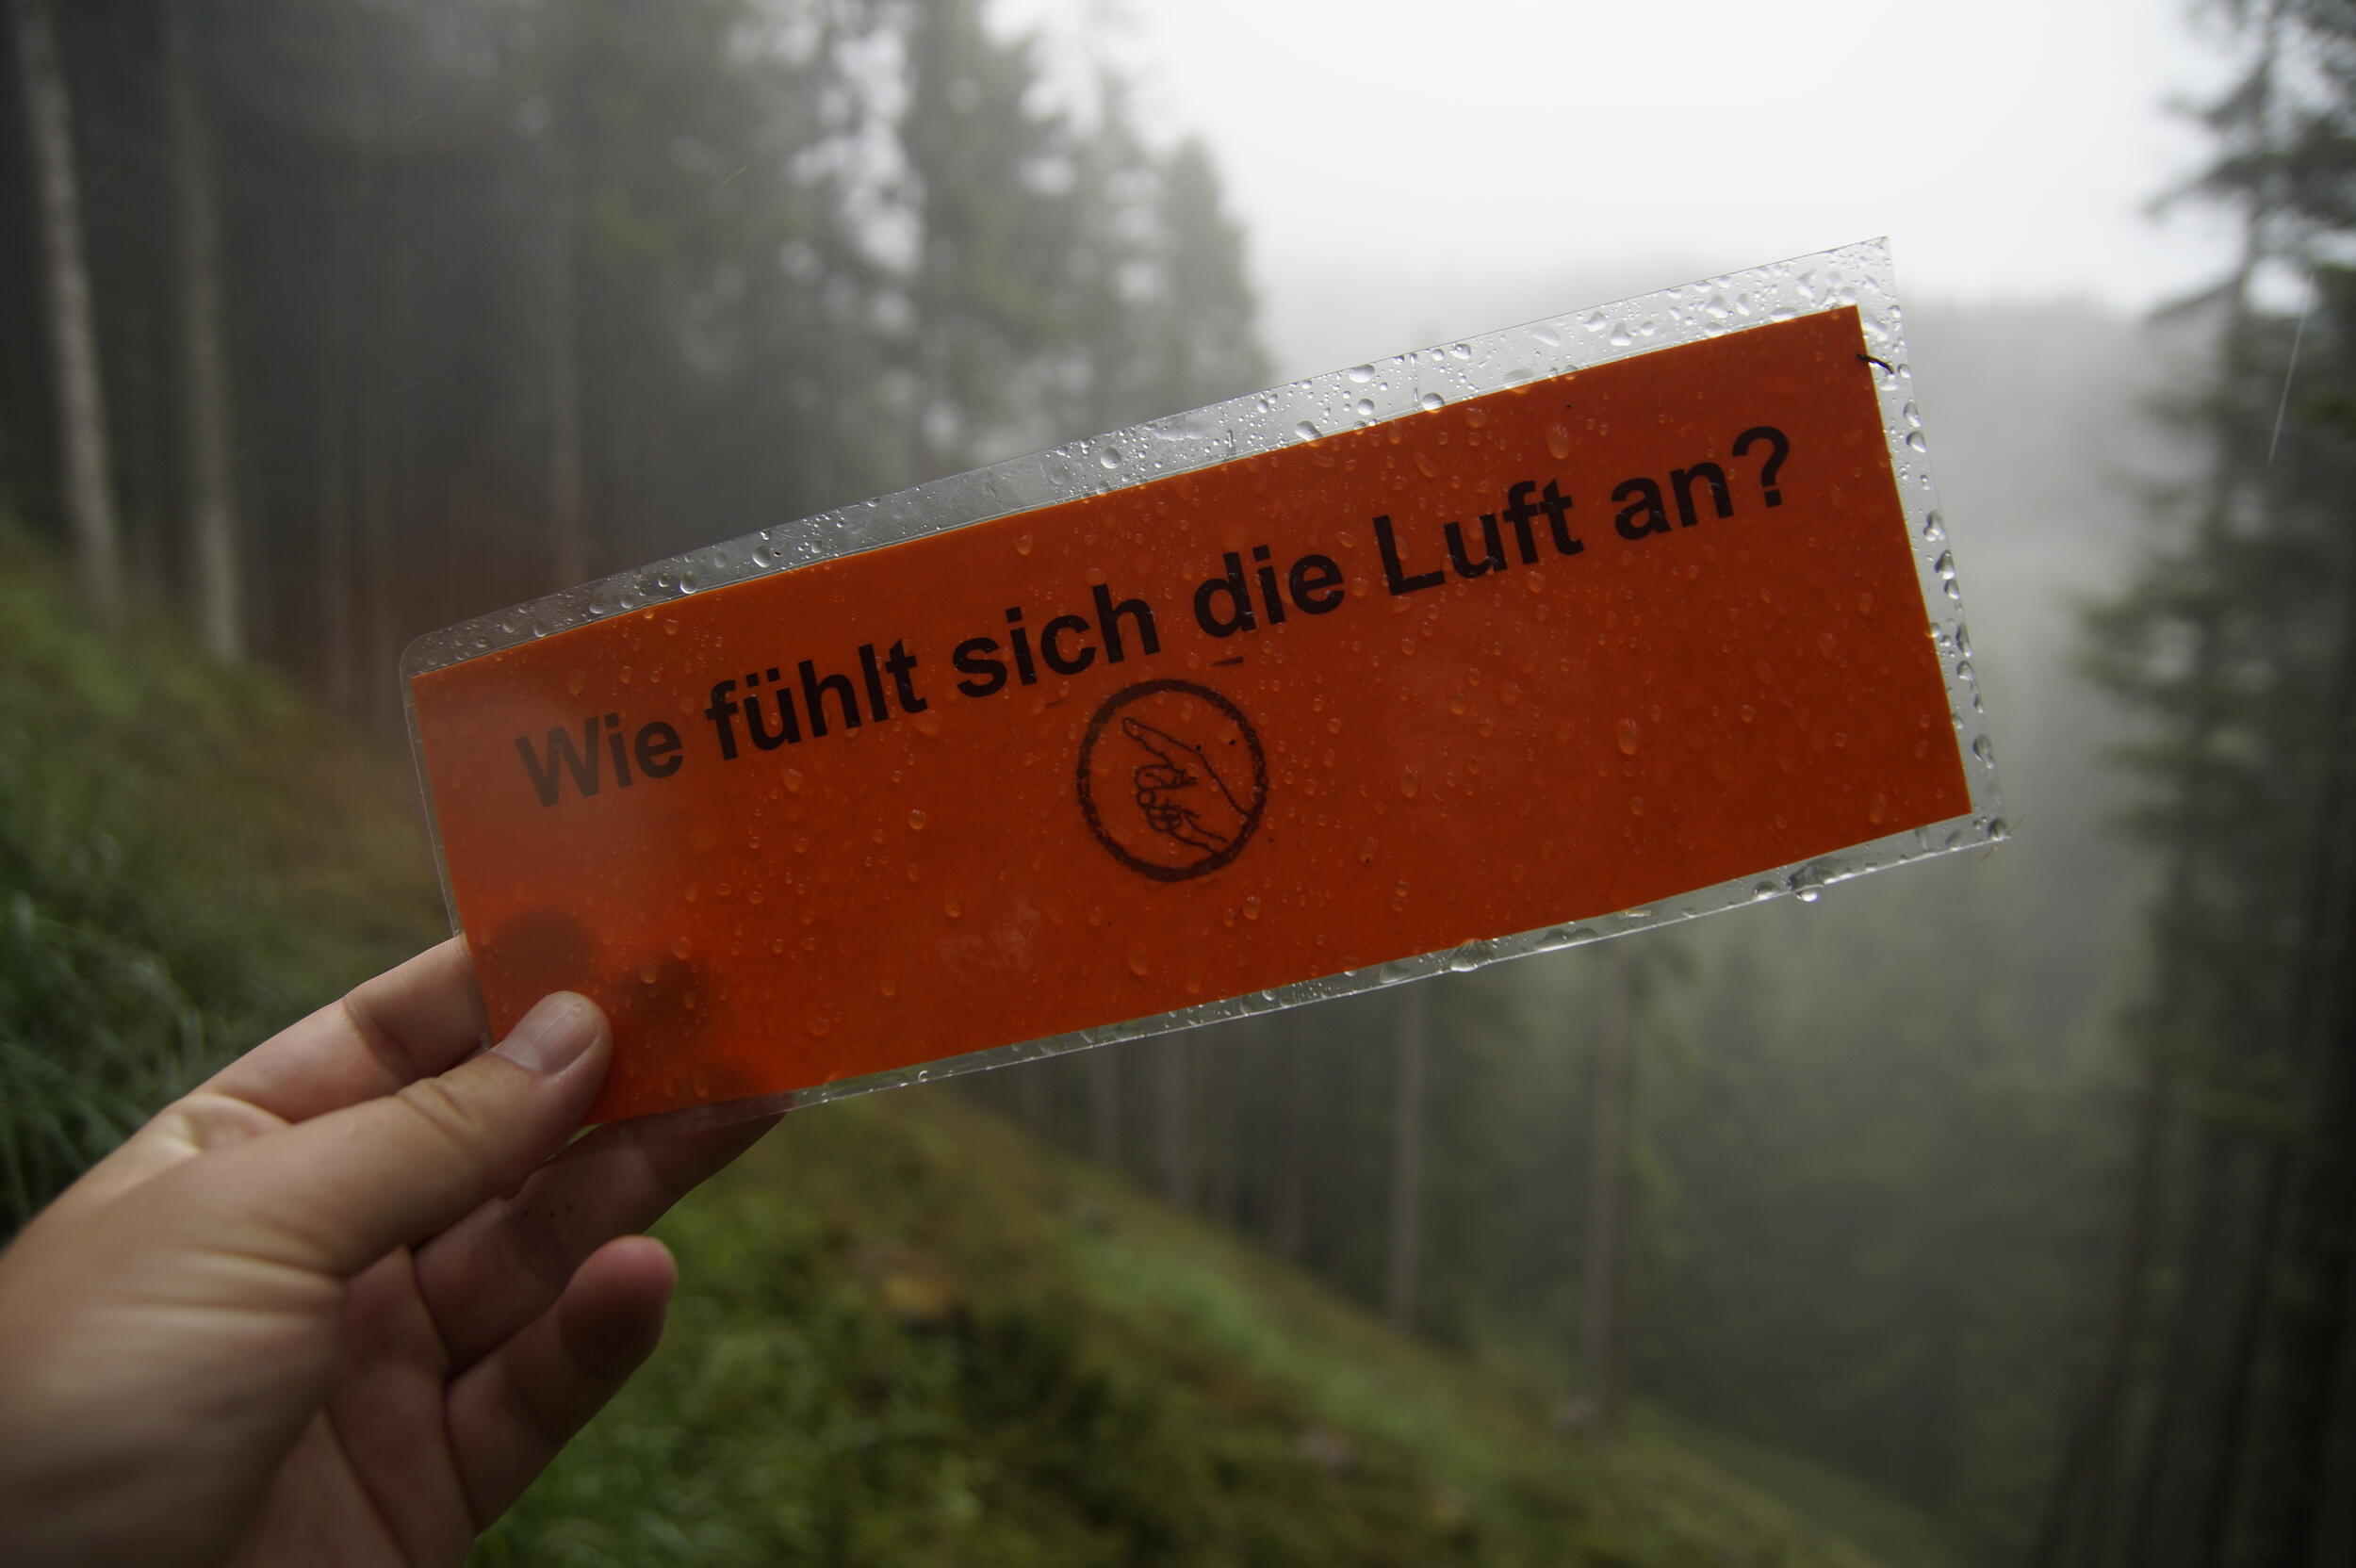 Hochhalten eines Kärtchens mit der Frage: "Wie fühlt sich die Luft an" © Daniel Müller (Nationalpark Schwarzwald)